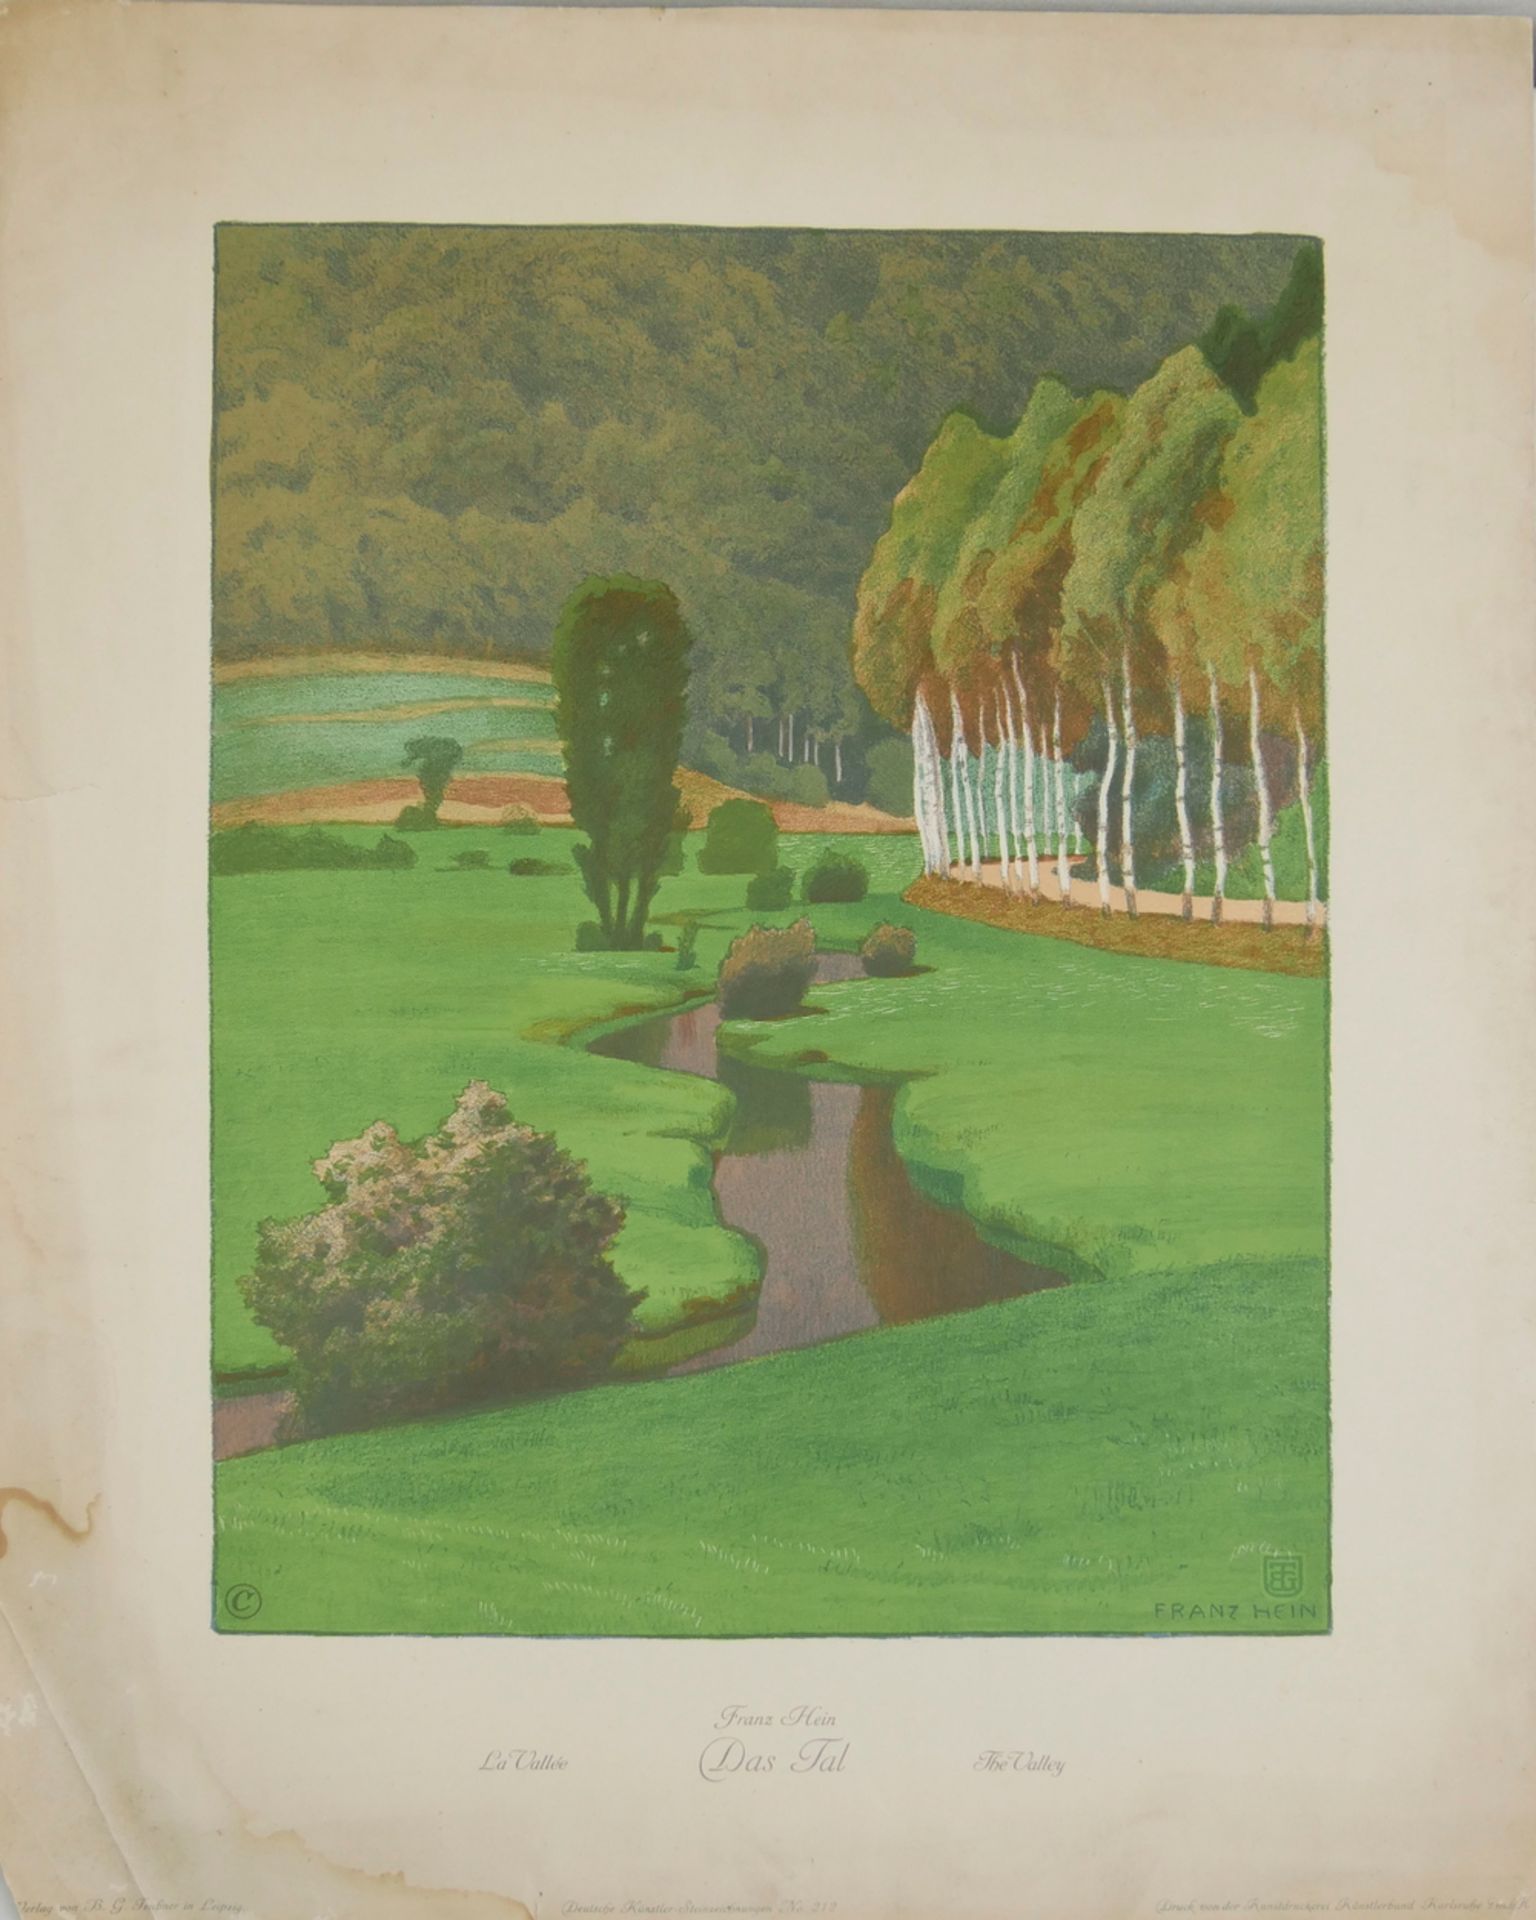 Farblithographie Franz Hein 1863 - 1927. "Das Tal" Maße ca. 43,5 x 57 cm